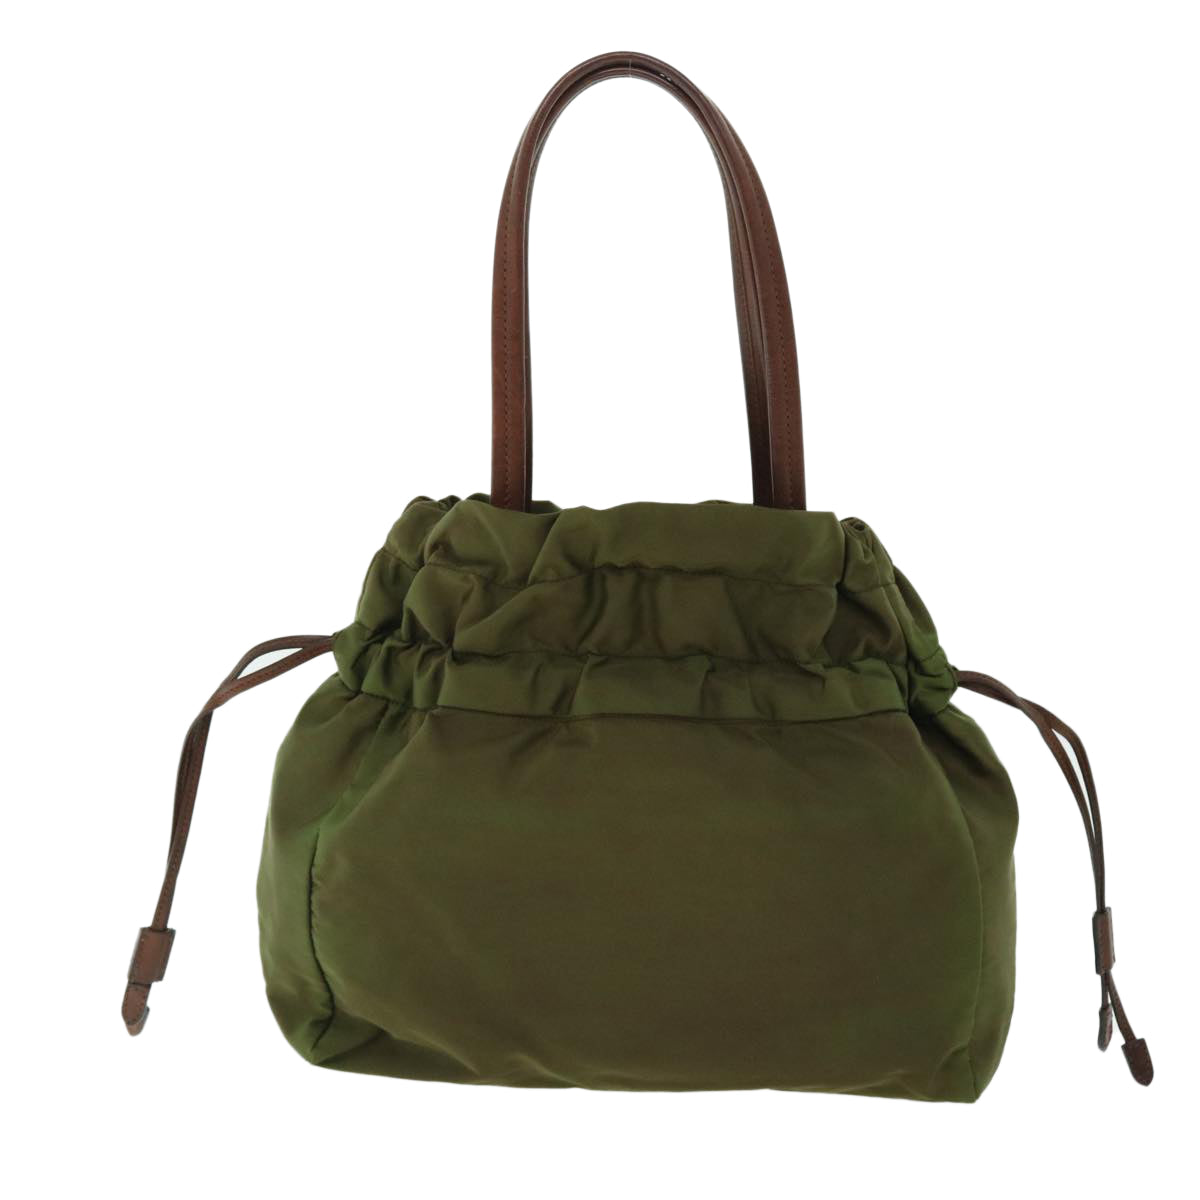 PRADA Hand Bag Nylon Khaki Auth 51823